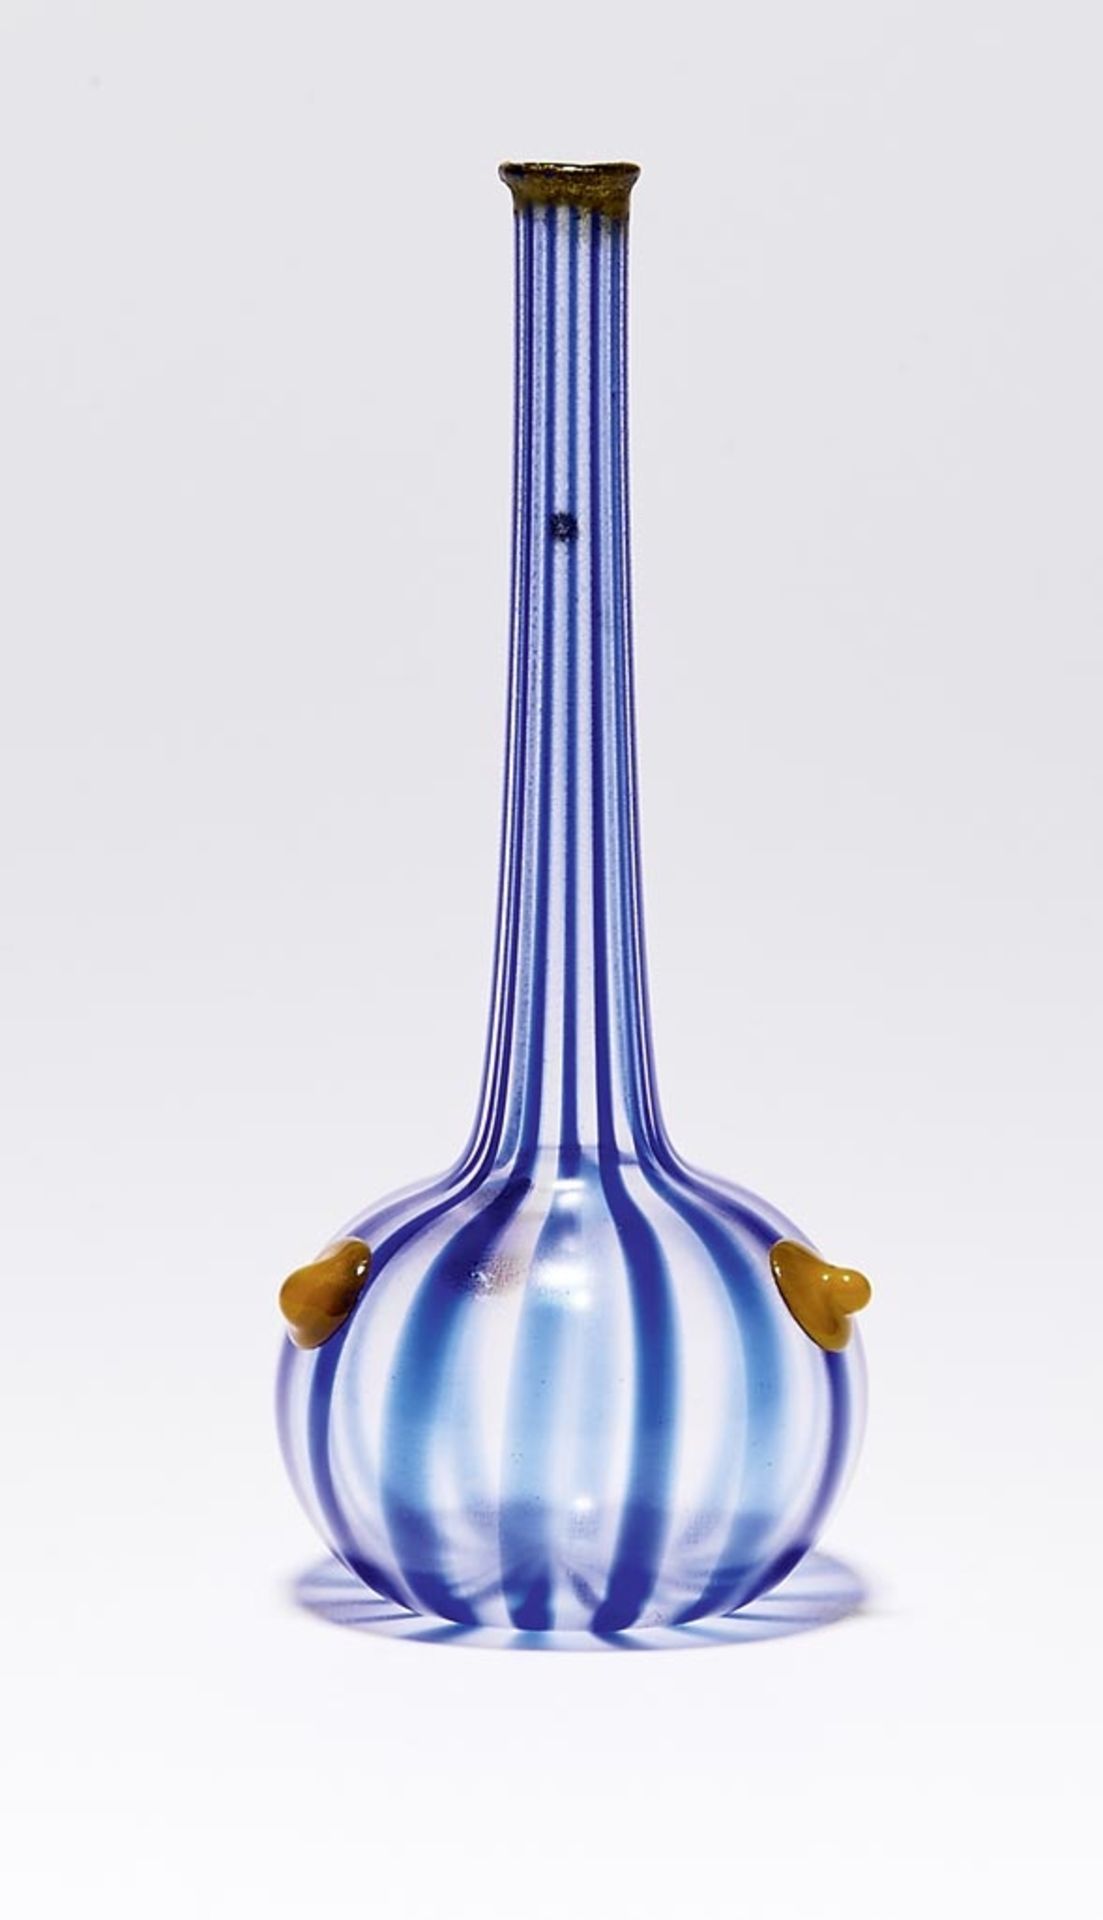 Kleine Berluze aus der Serie "Vases Bijoux", Verreries Schneider, Epinay-sur-Seine - 1918-20